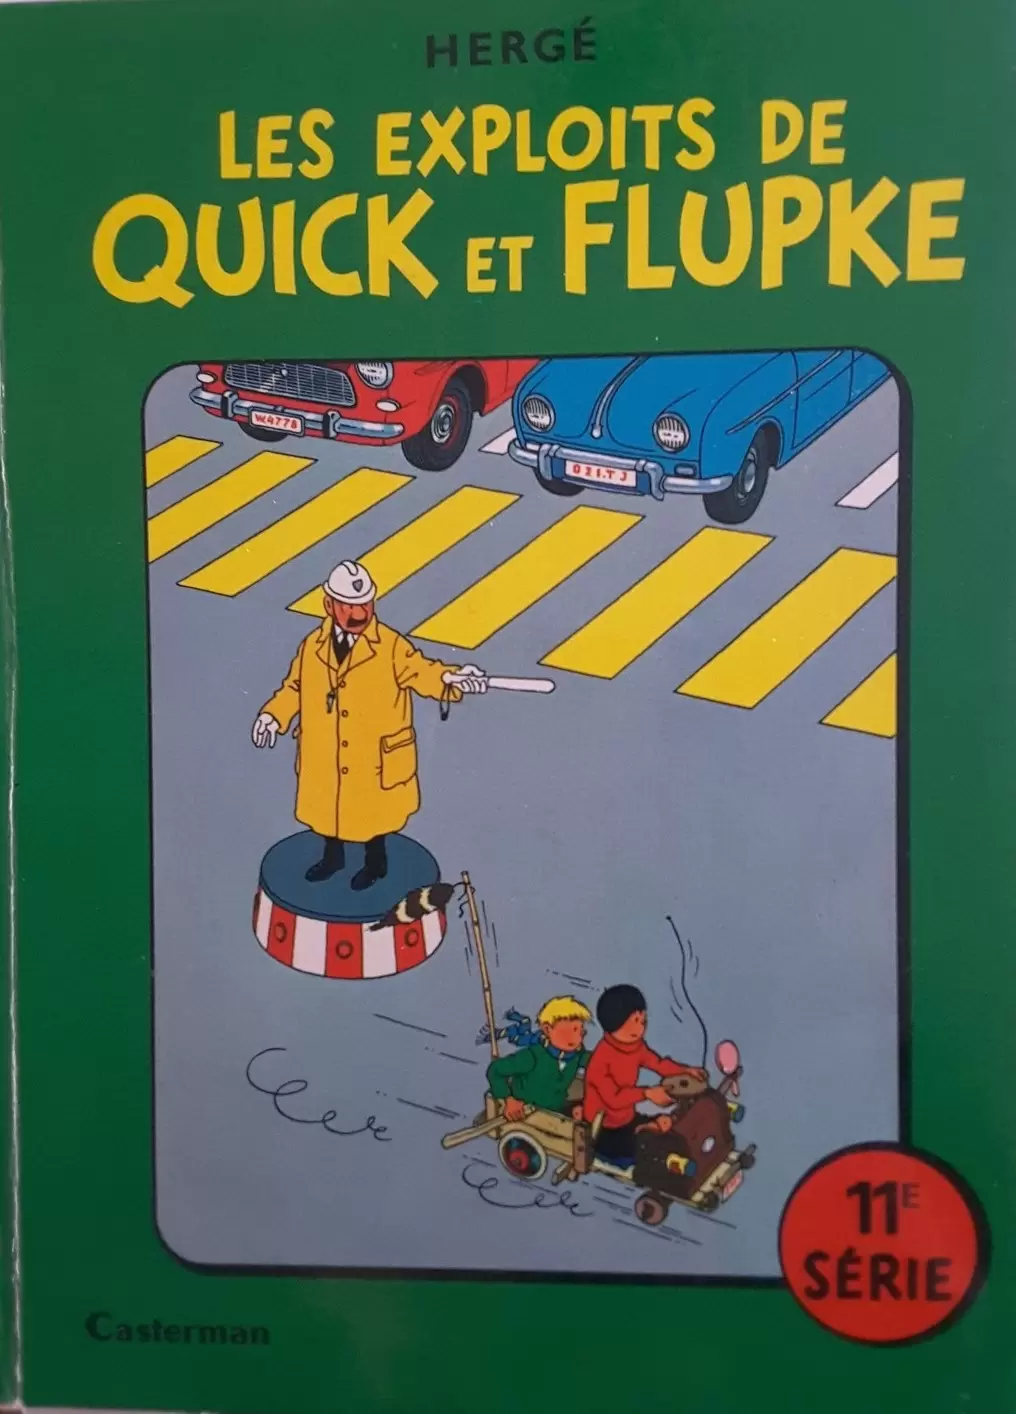 Quick & Flupke - Les exploits de Quick et Flupke 11ème série